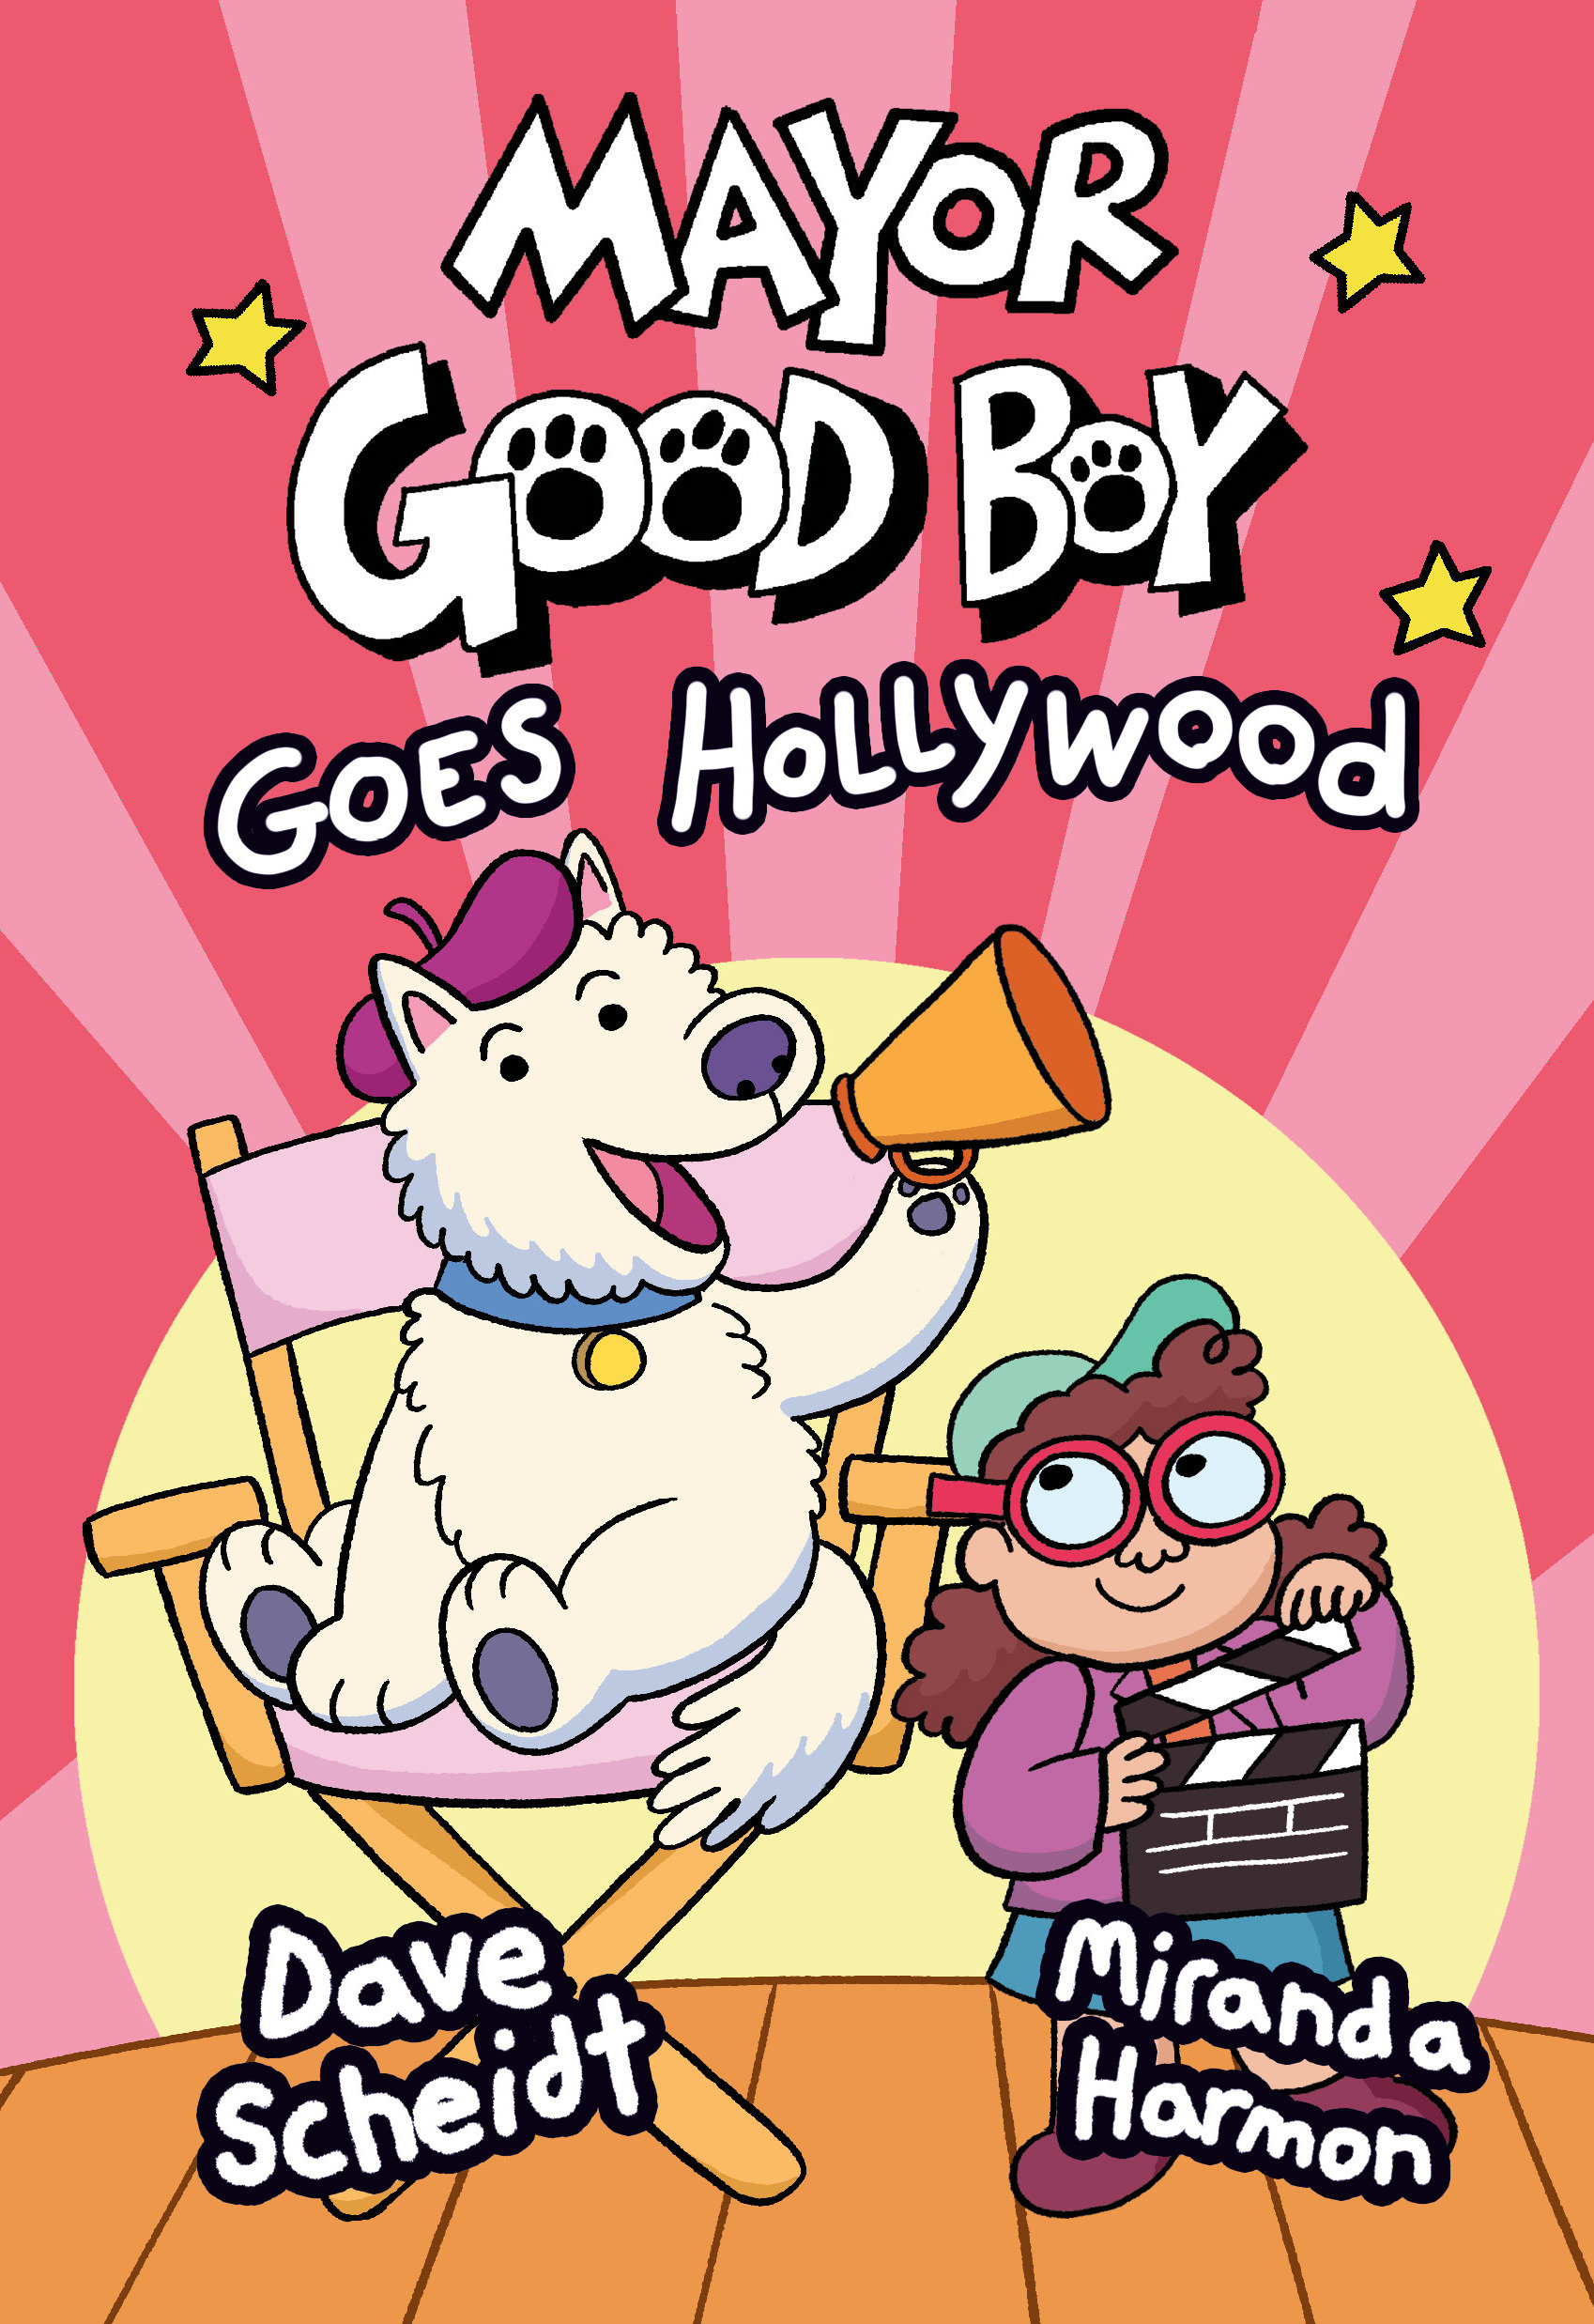 Mayor Good Boy Graphic Novel Volume 2 Goes Hollywood